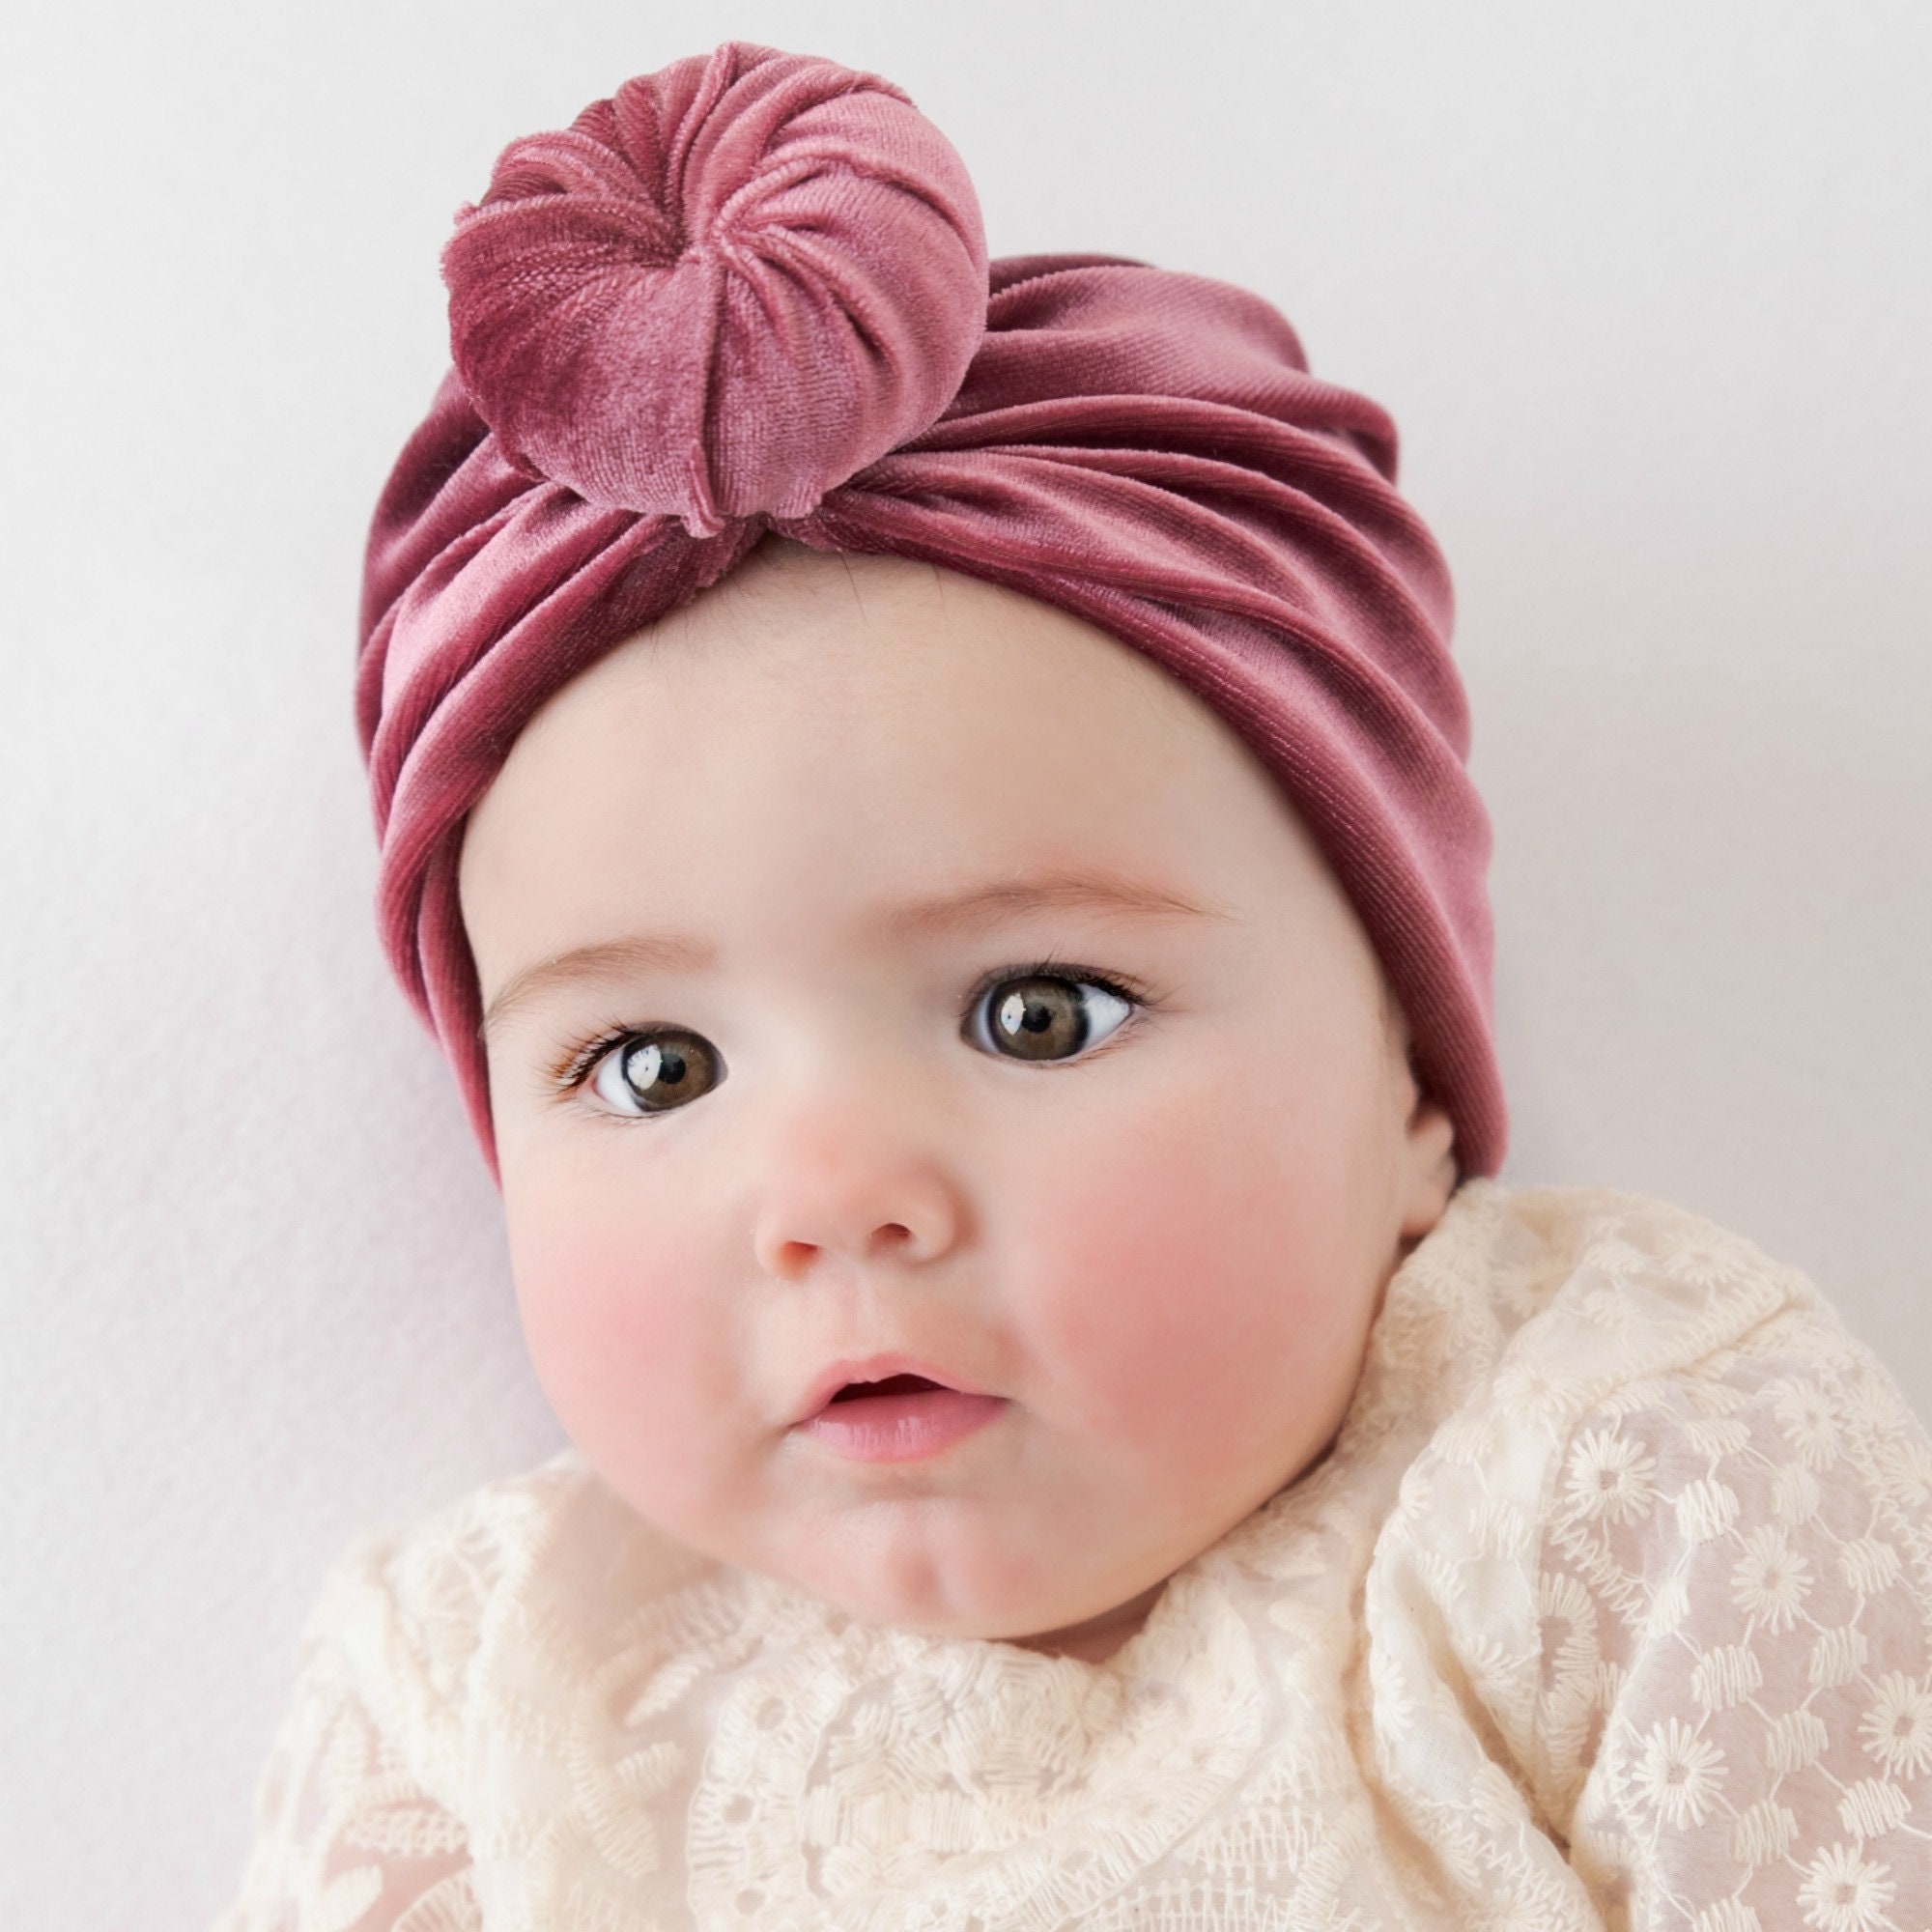 Neugeborene Mädchen Baby Knoten Turban Hut Kinder Beanie Mütze Kopftuch Haarband 